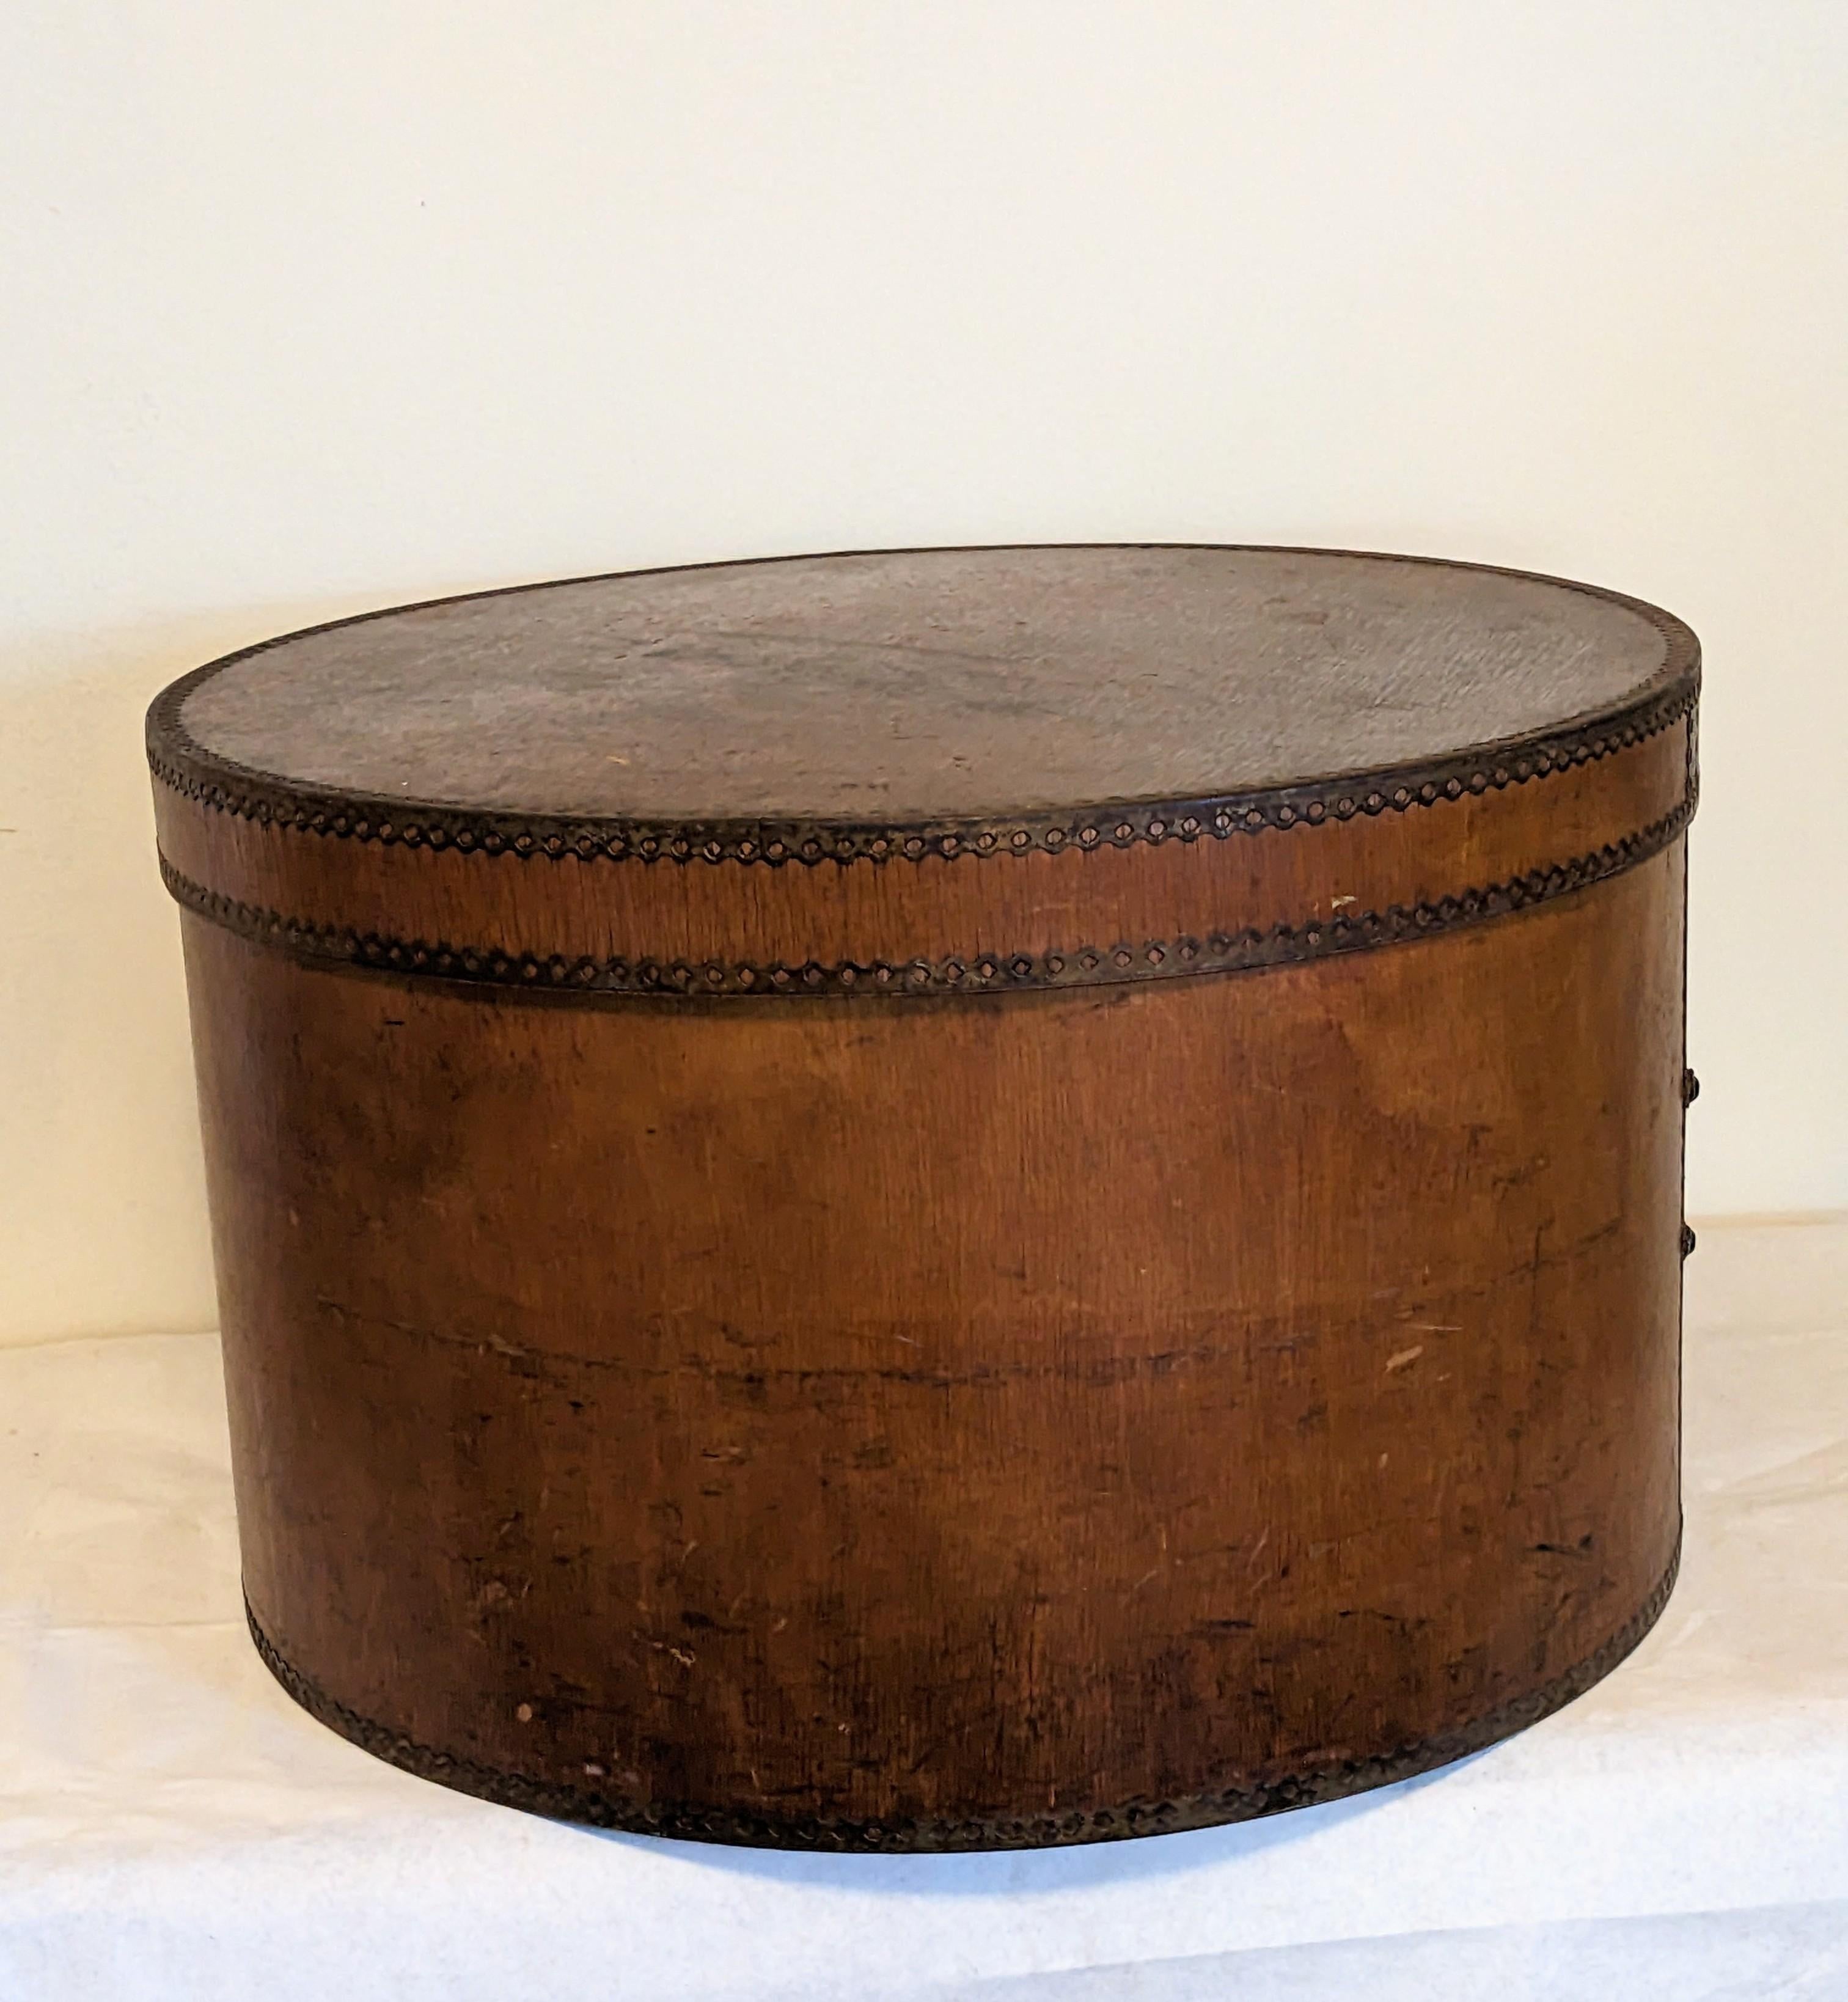 Merveilleuse boîte à chapeaux en bois courbé de l'époque édouardienne, avec des bandes métalliques rivetées pour le soutien sur tous les bords. Idéal pour le stockage, européen du début des années 1900. 18